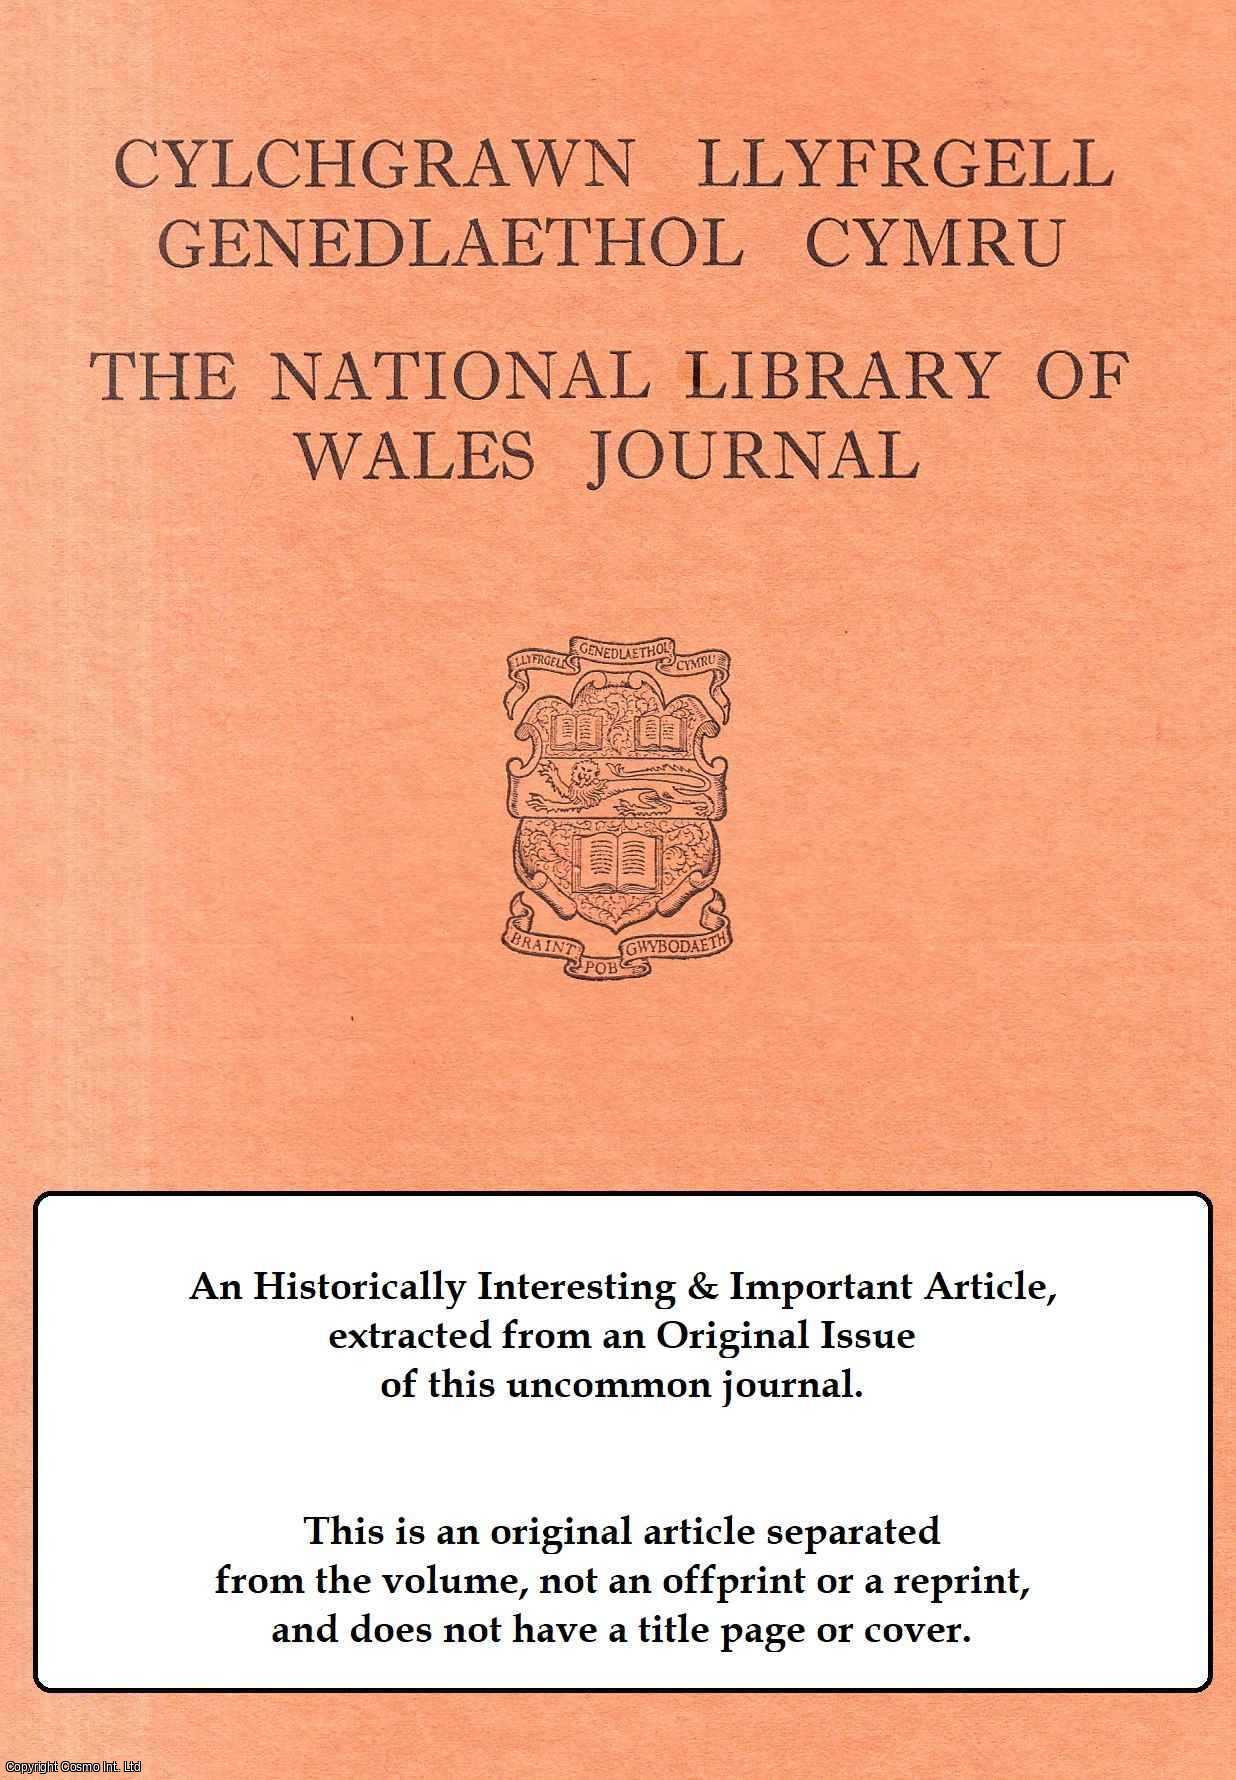 --- - Y Cerddi I'r Tai Crefydd Fel Ffynhonnell Hanesyddol. An original article from The National Library of Wales Journal, 1974.